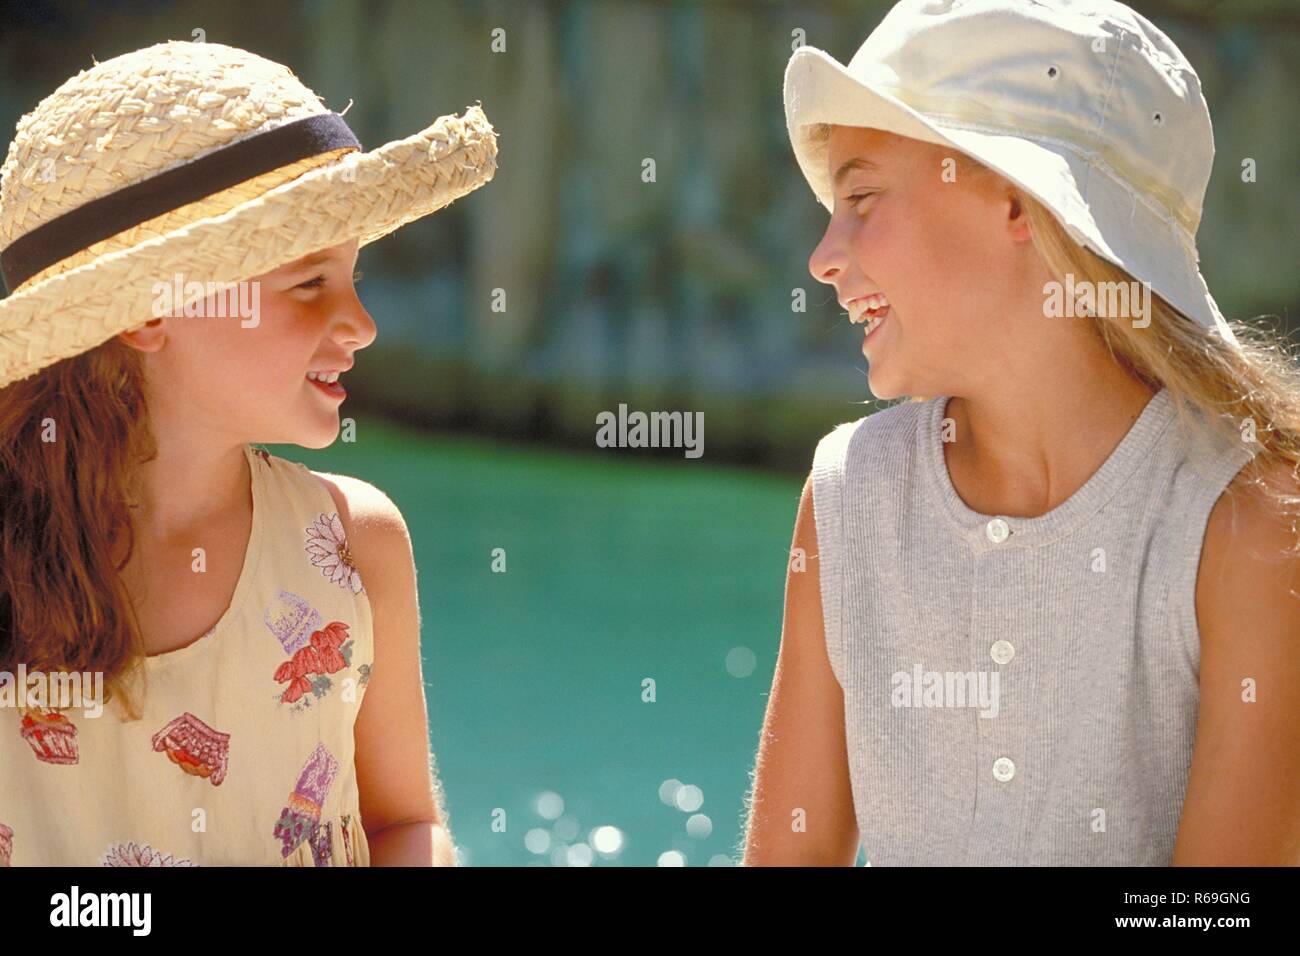 Outdoor, Nahaufnahme, Profil von zwei sich unterhaltenden lachenden Maedchen mit langen Haaren, 8-10 Jahre alt, bekleidet mit hellen Sommerkleidern und Hueten am Rand eines Schwimmbeckens Stock Photo